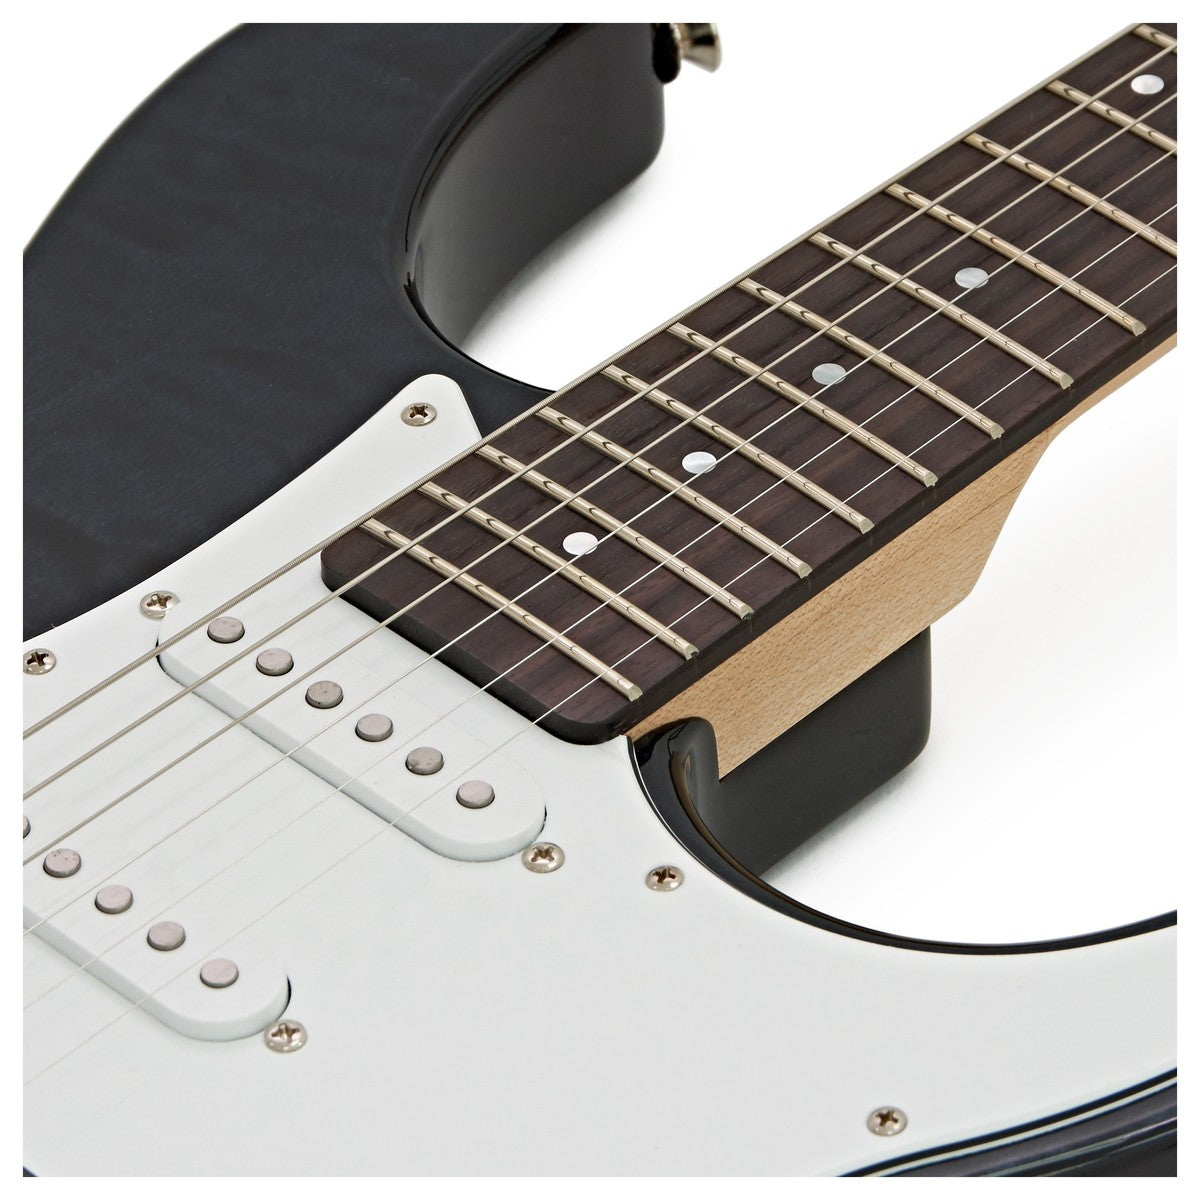 Đàn Guitar Điện Yamaha Pacifica PAC212 VQM Black